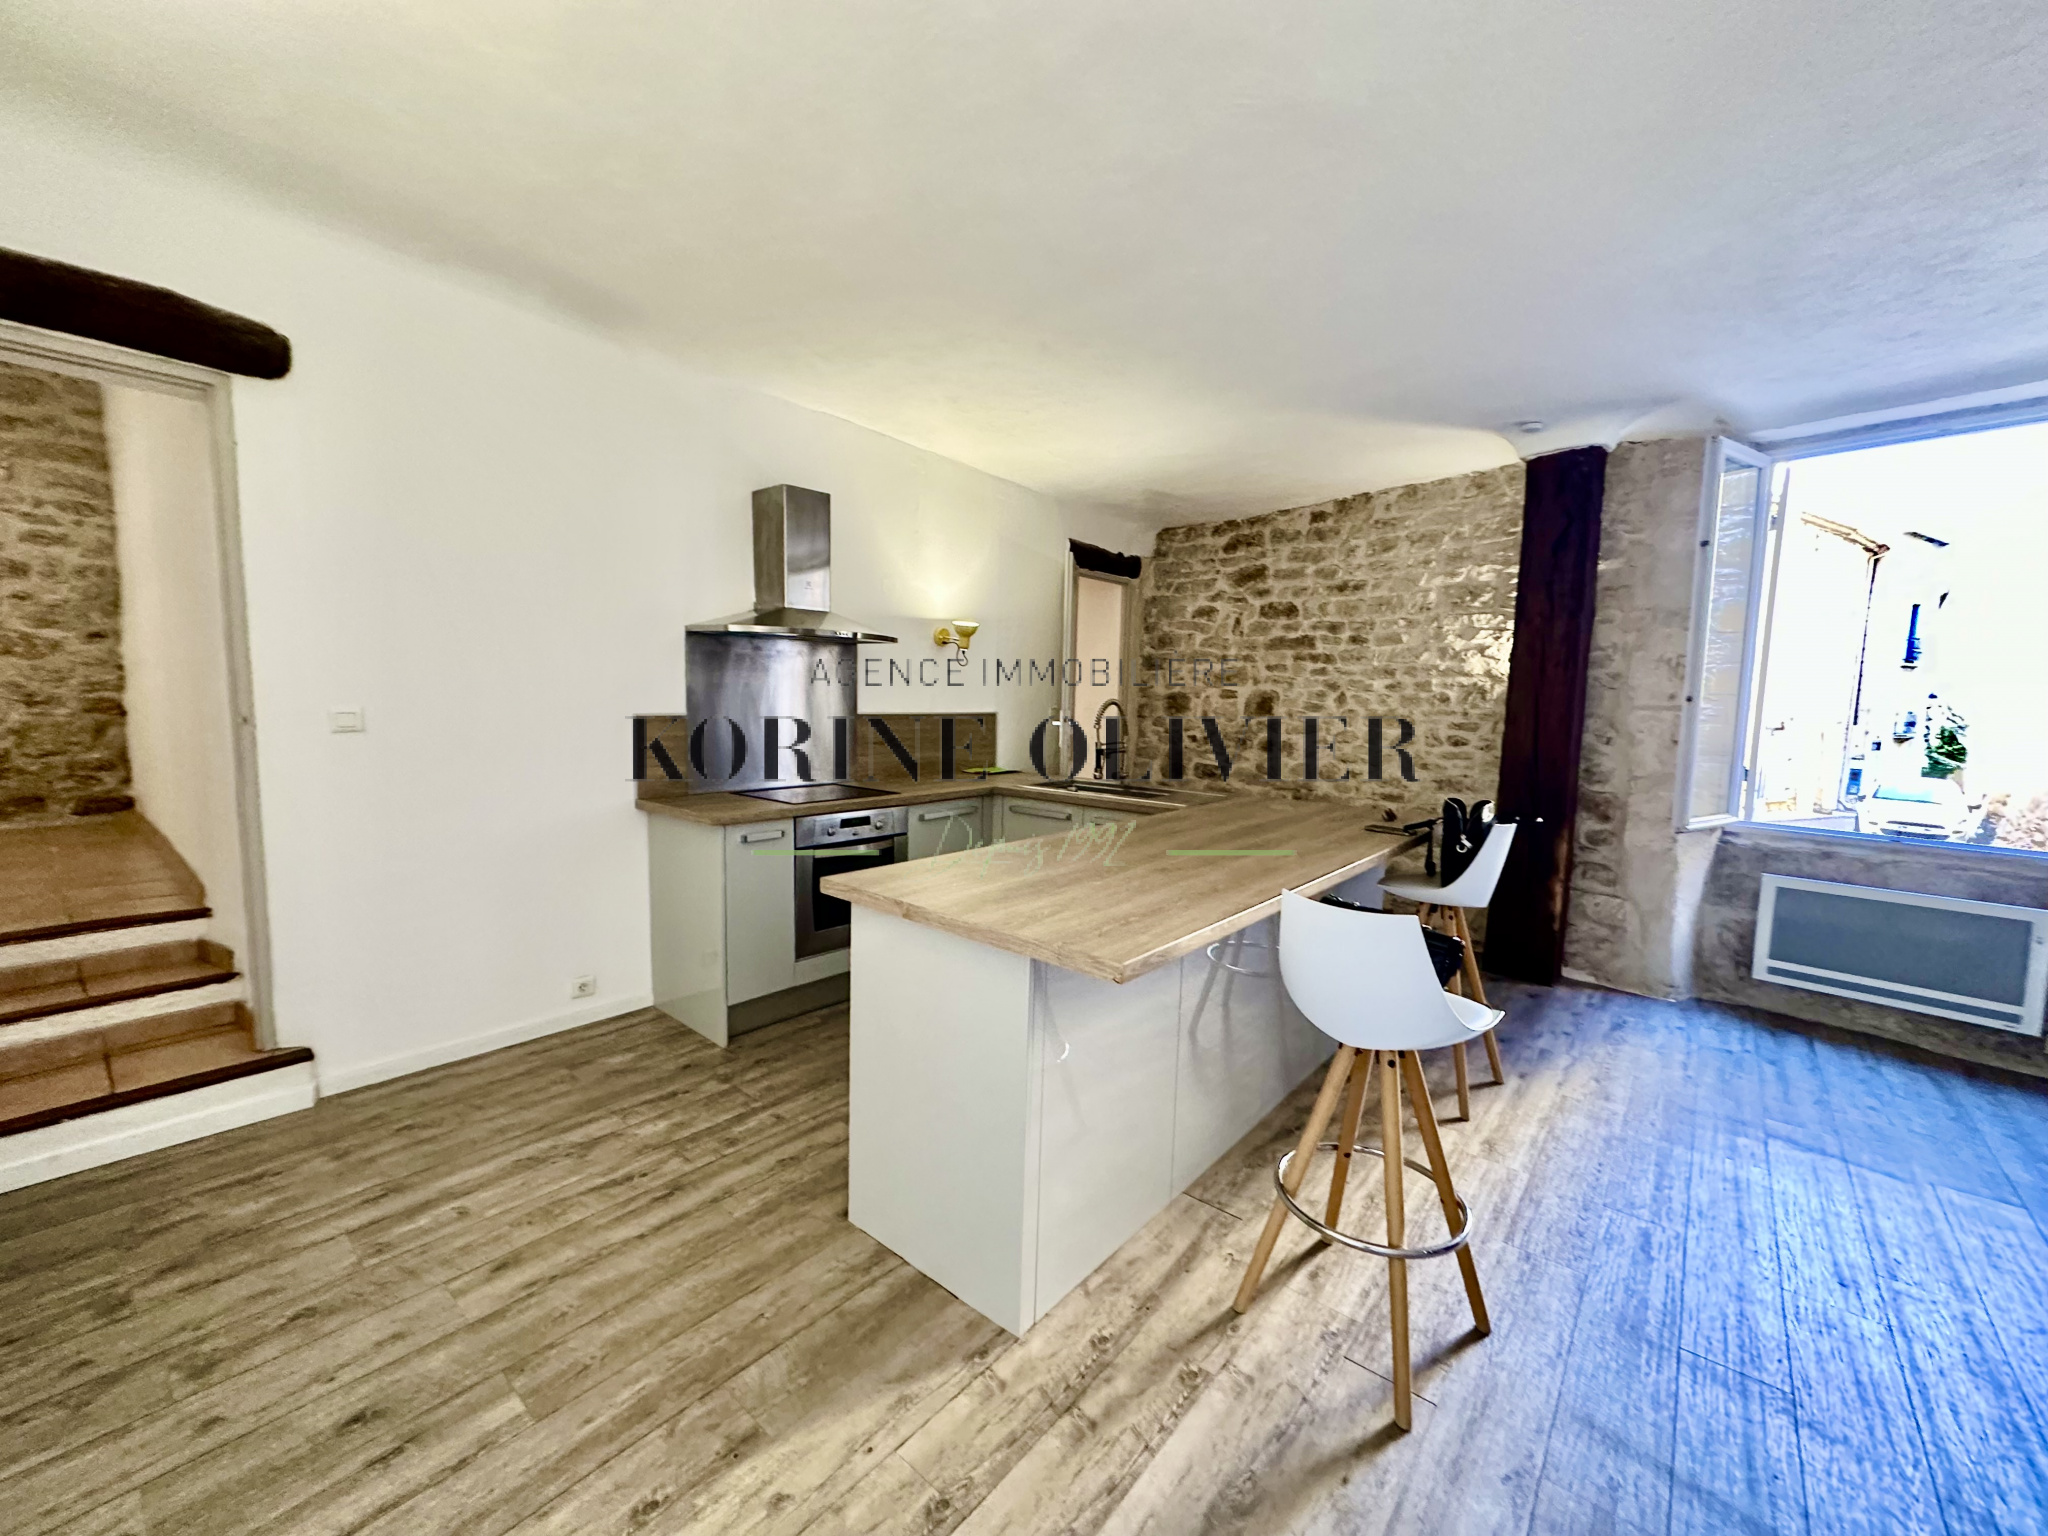 Vente Appartement 77m² 3 Pièces à Lançon-Provence (13680) - Korine Olivier